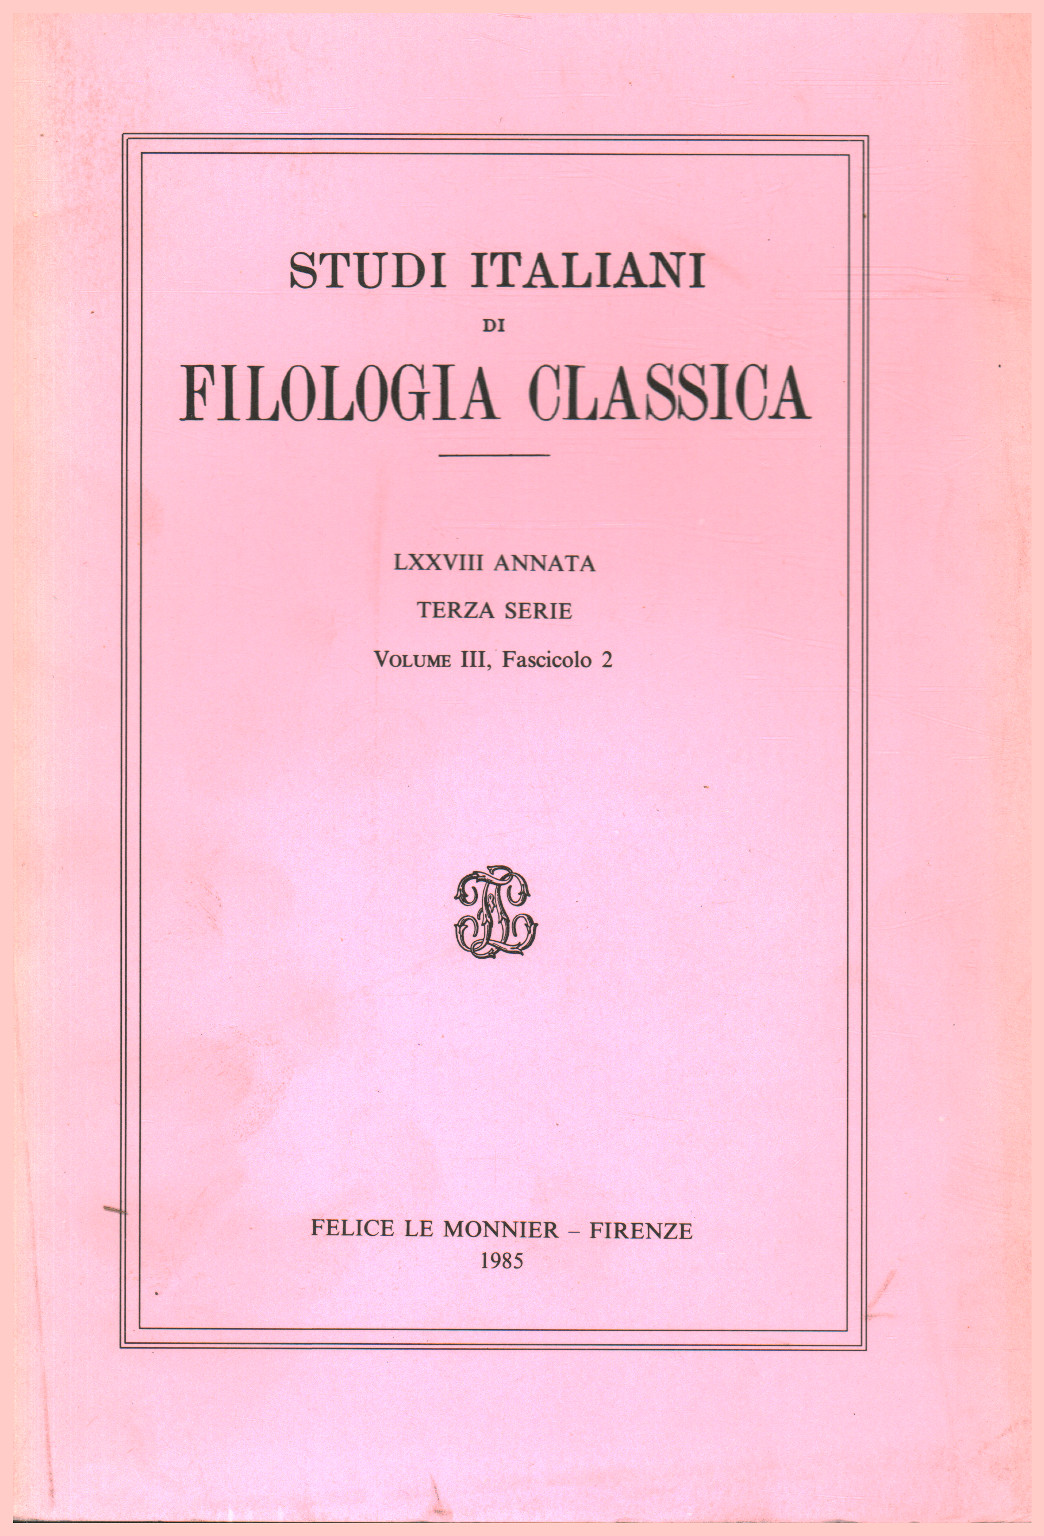 Italien des études de philologie classique, LXXVIII Annat, s.un.